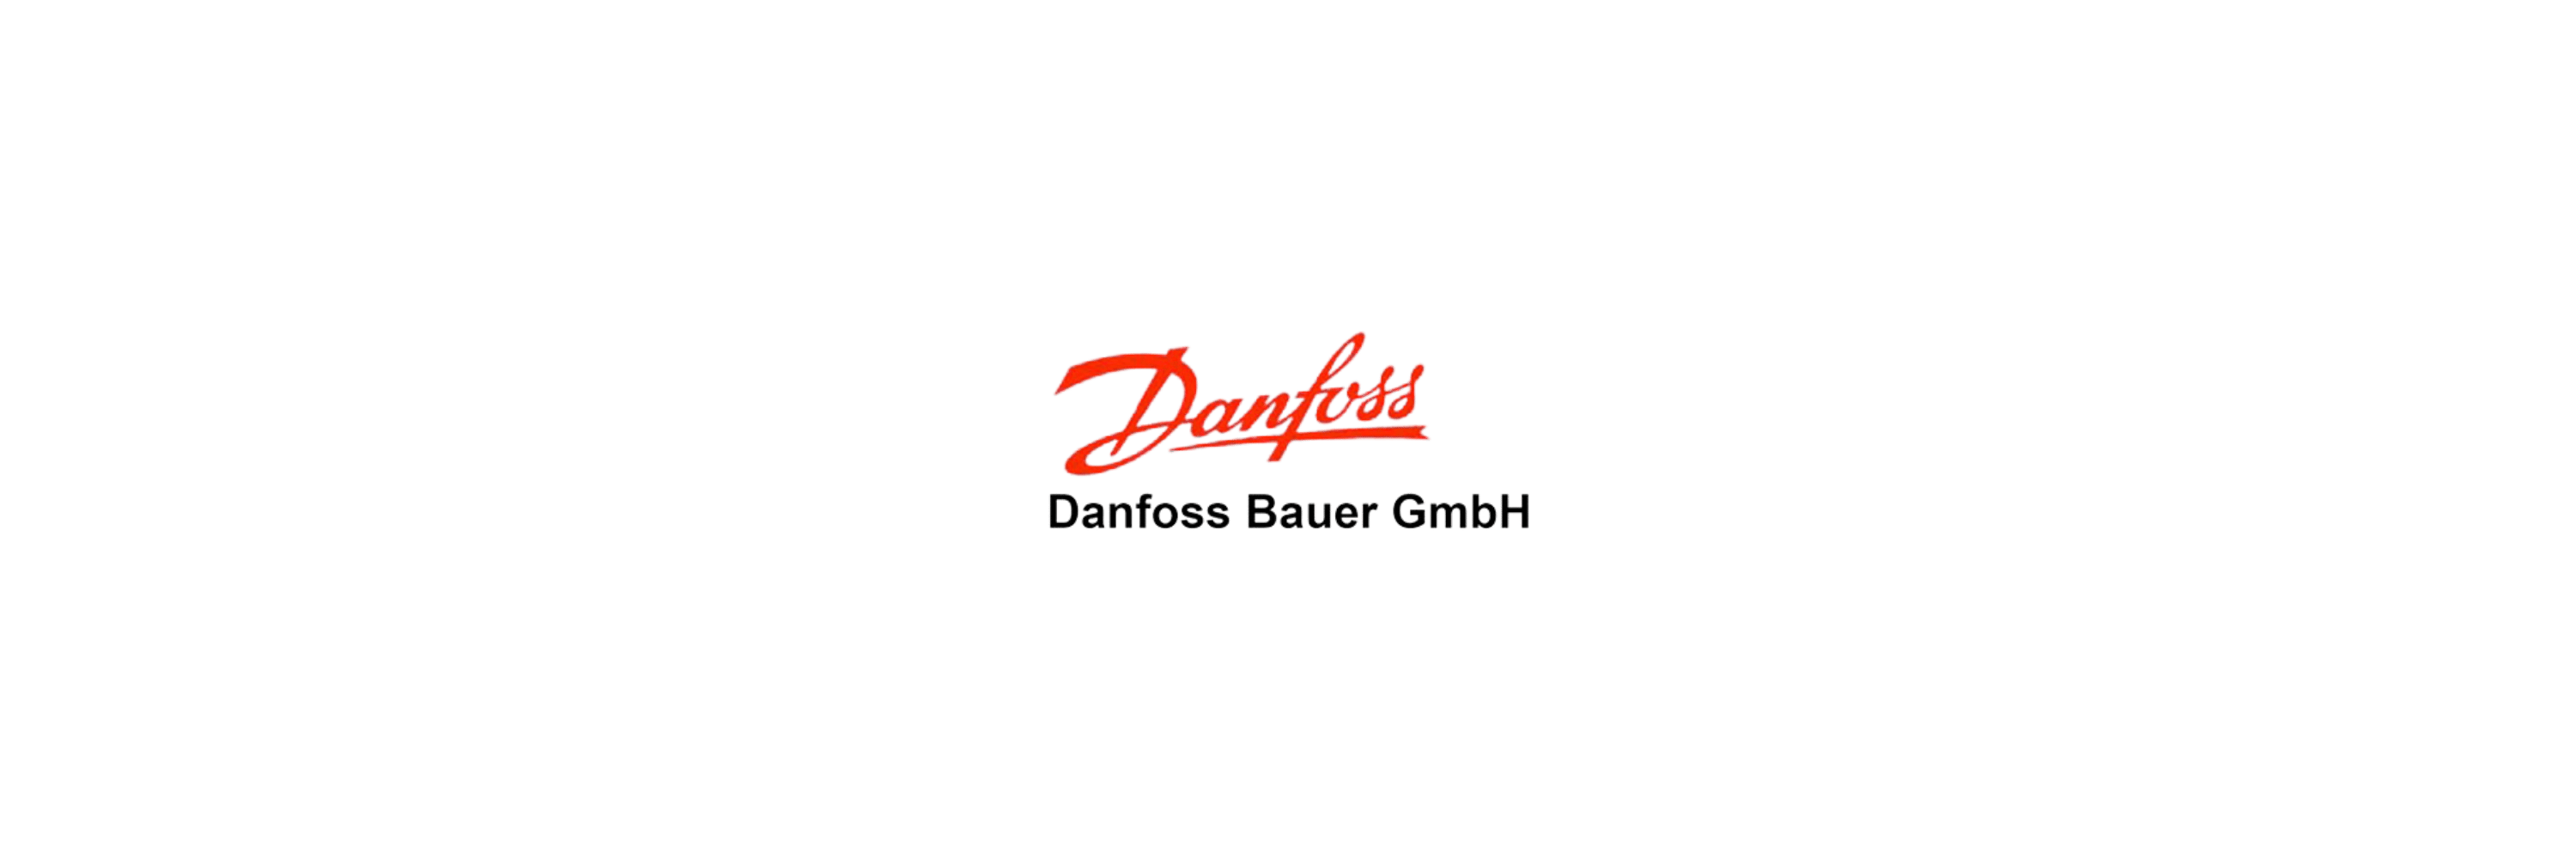 Danfoss Bauer - Klenk Maschinenhandel